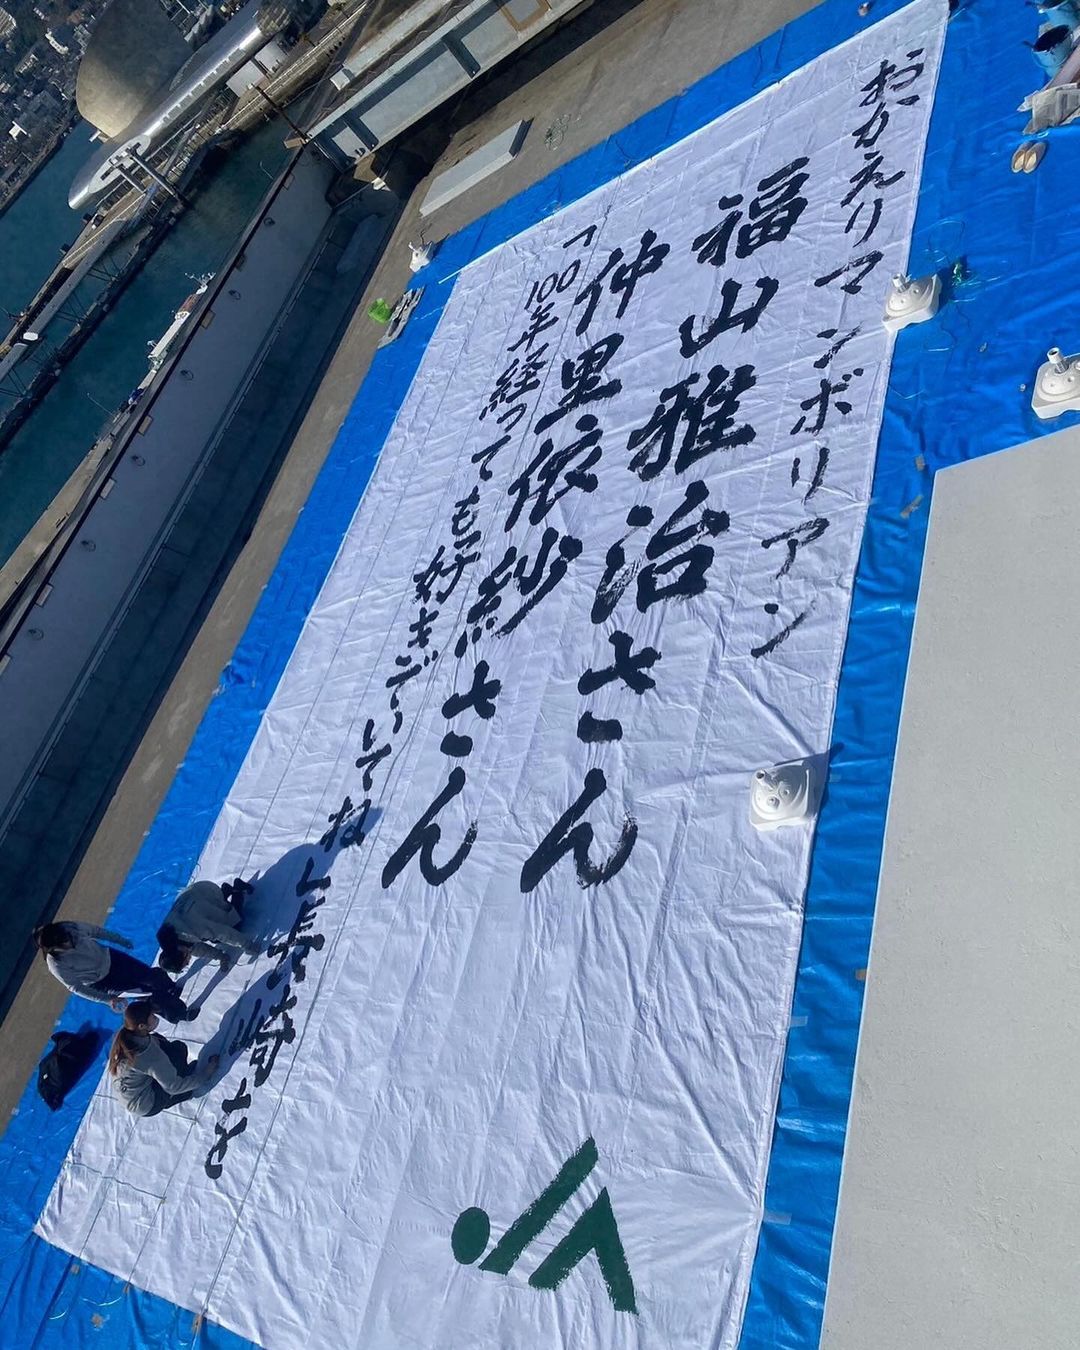 長崎大学全学書道部が長崎ランタンフェスティバル「皇帝パレード特別版」に向けた応援垂れ幕を揮毫